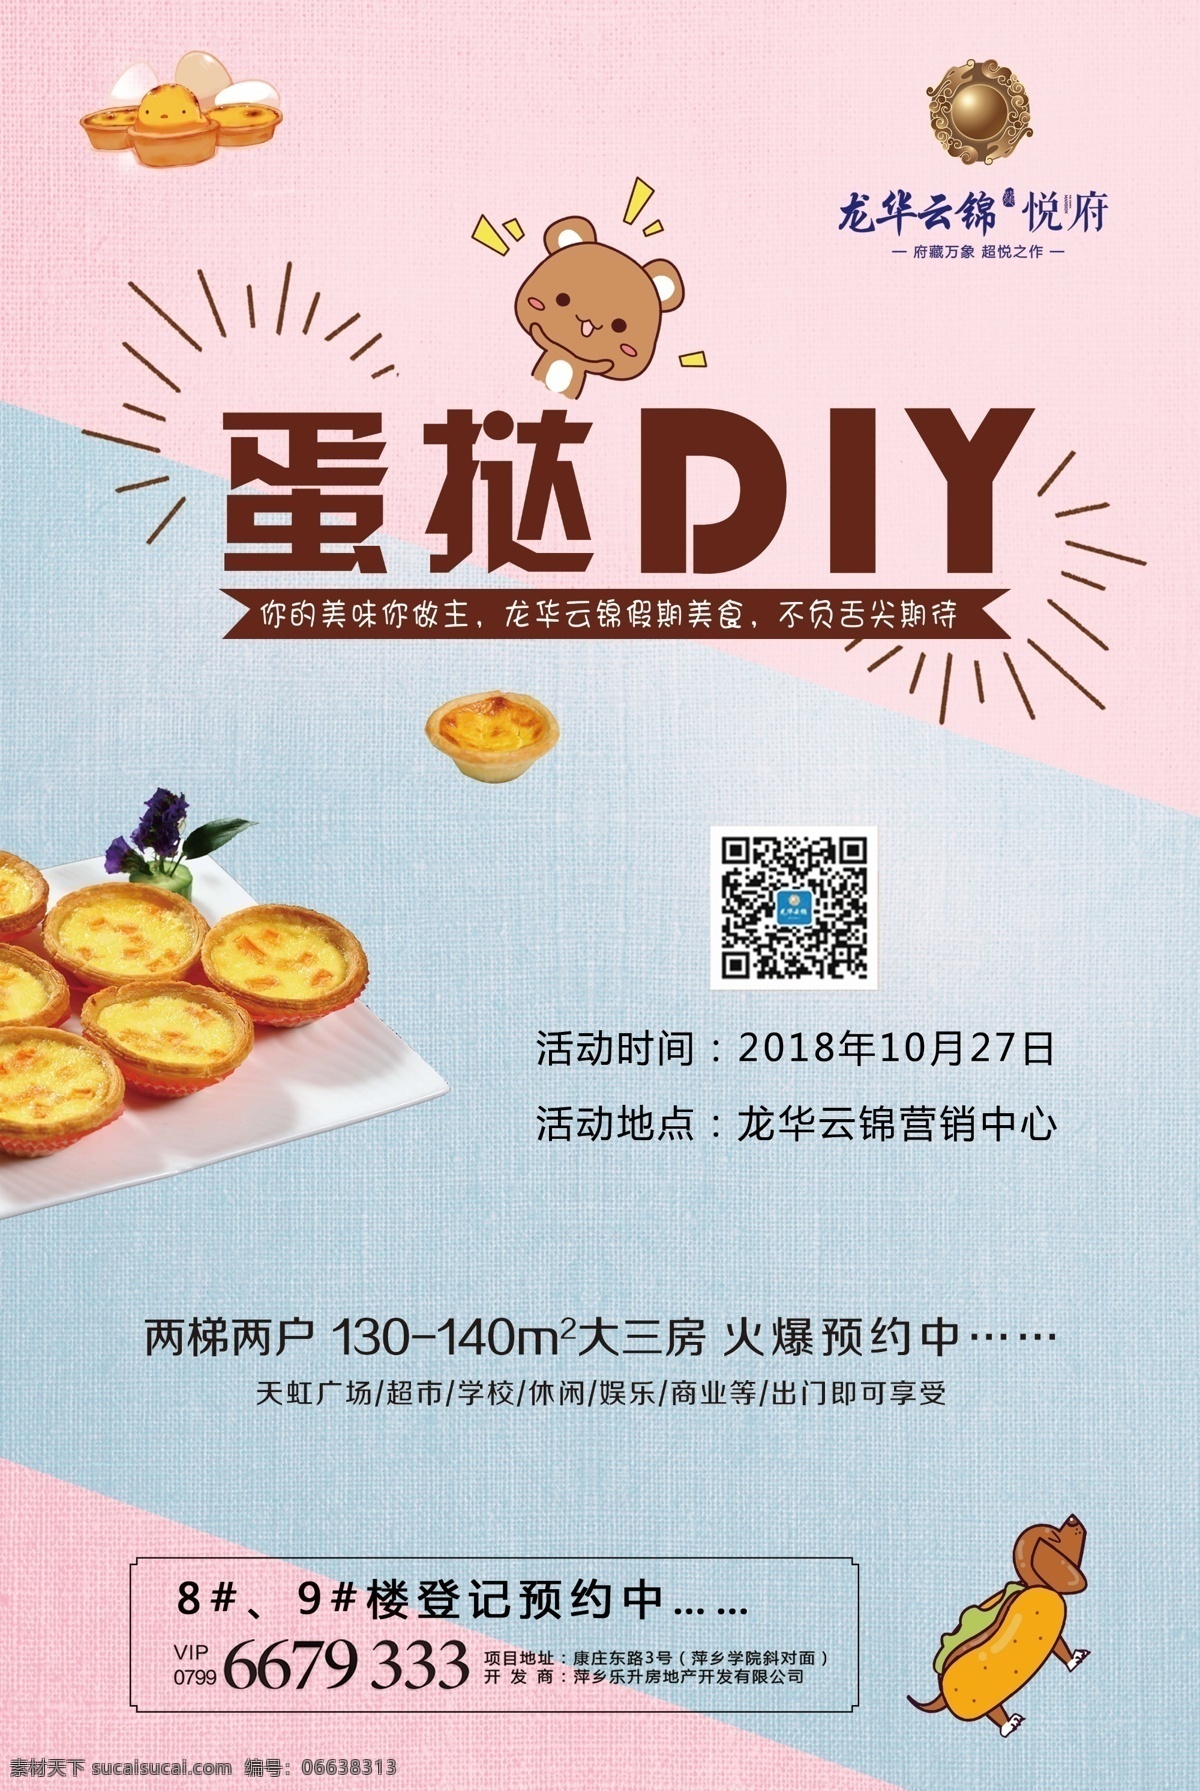 蛋挞 diy 甜品 海报 食物 美味 可爱 背景 房地产活动 房地产diy 手工活动 手工制作